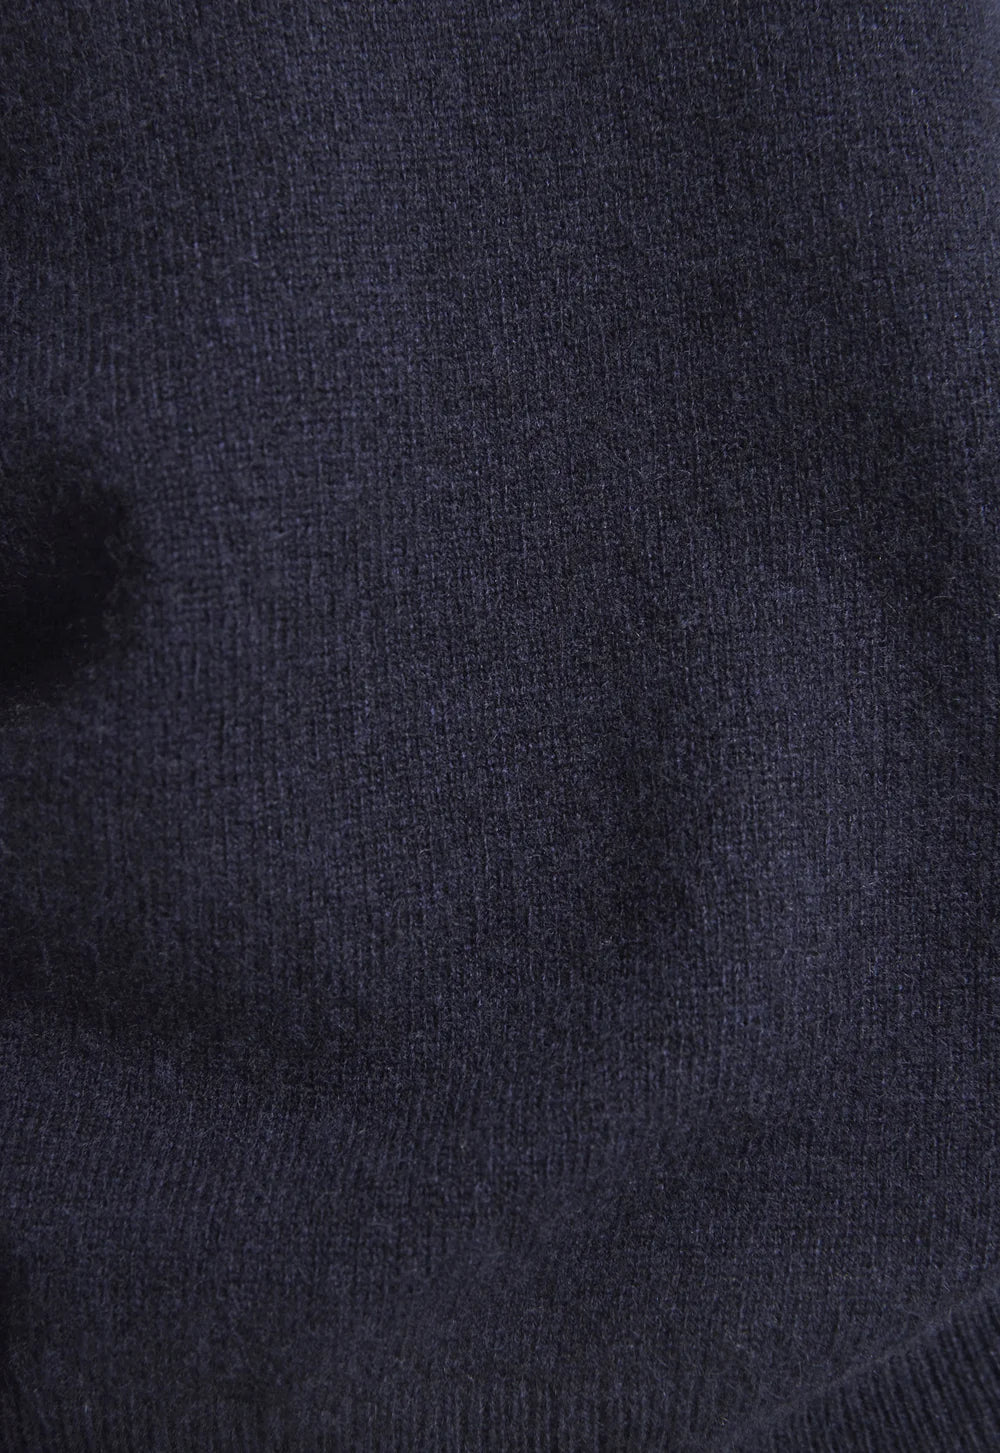 Jac + Jack Collins Cashmere Sweater - Darkest Navy